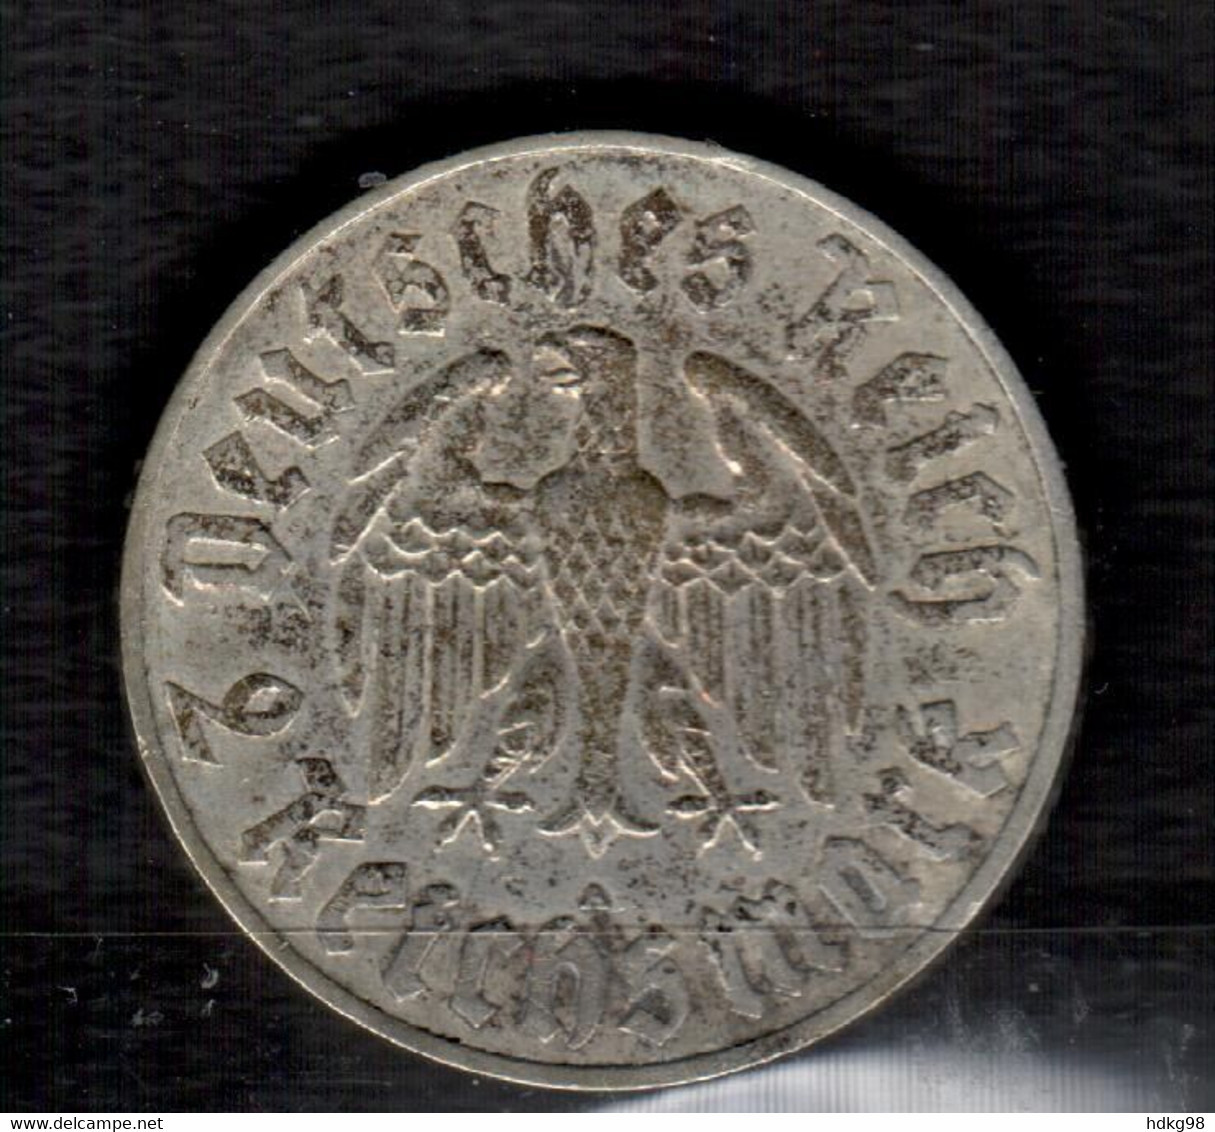 DR+ Deutsches Reich 1933 Martin Luther 1483-1933 2 Reichsmark - 2 Reichsmark